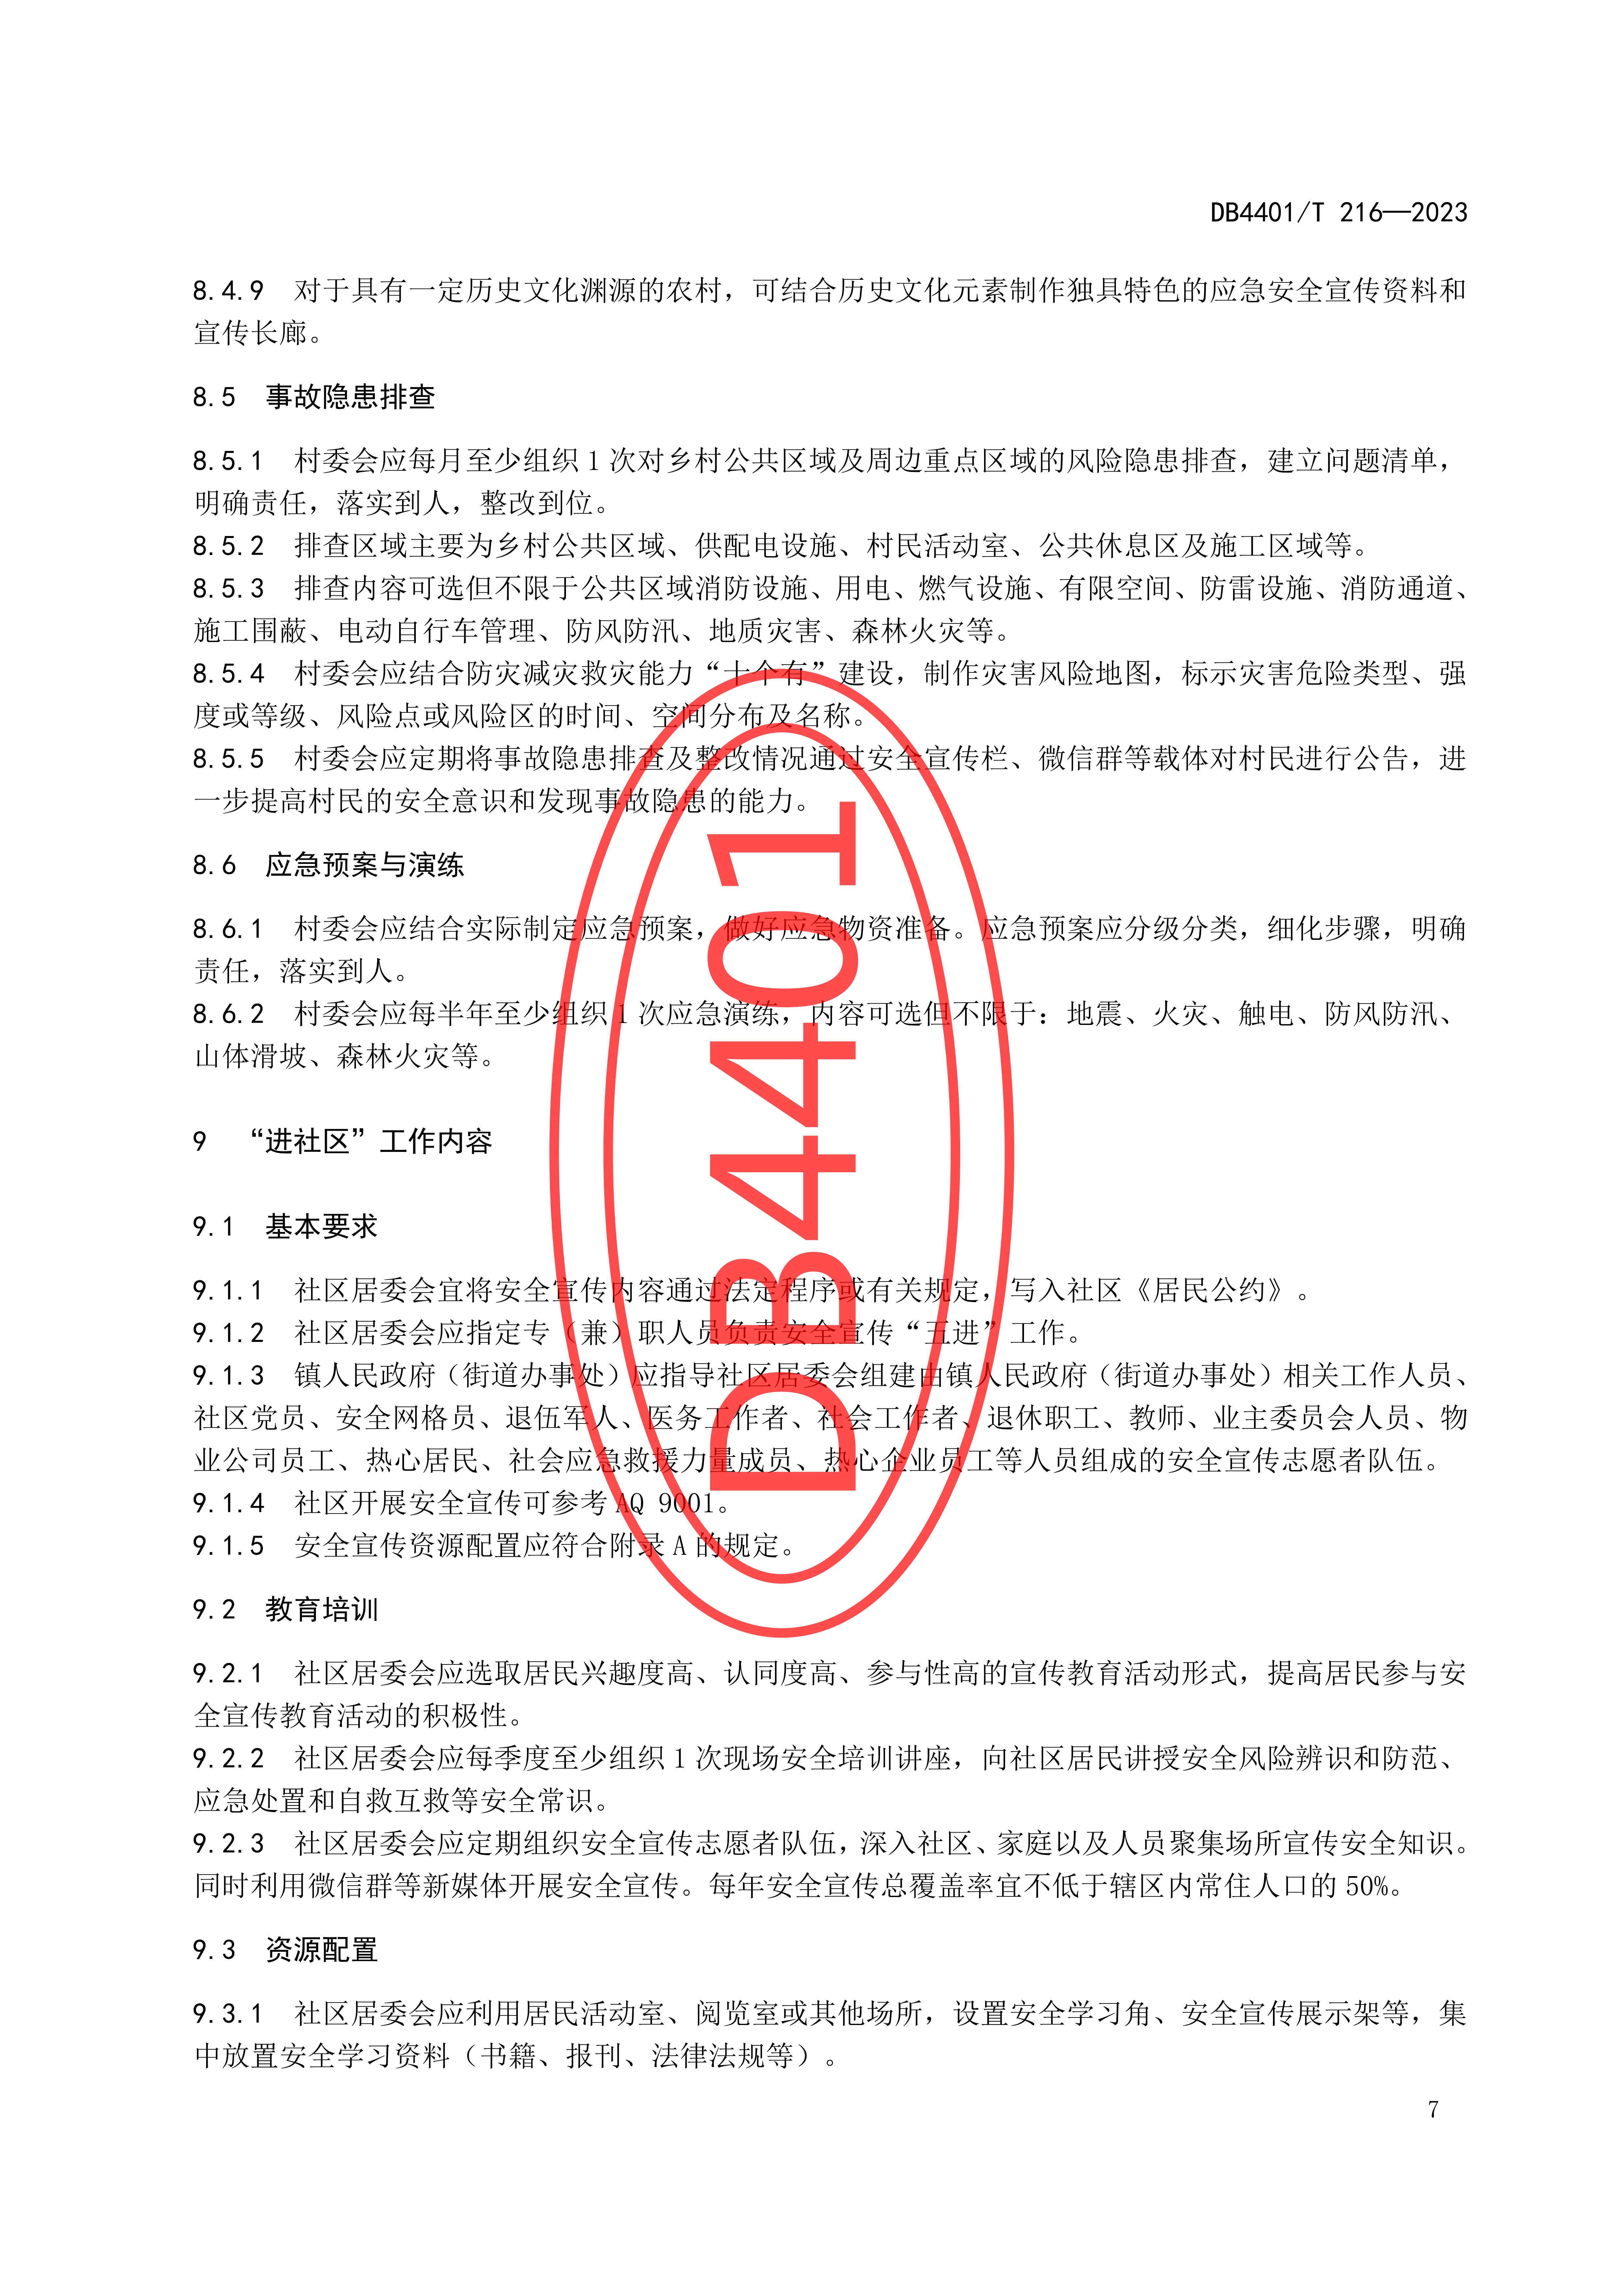 (终稿 发布稿)广州市地方标准《安全宣传“五进”工作规范》20230625_12.jpg